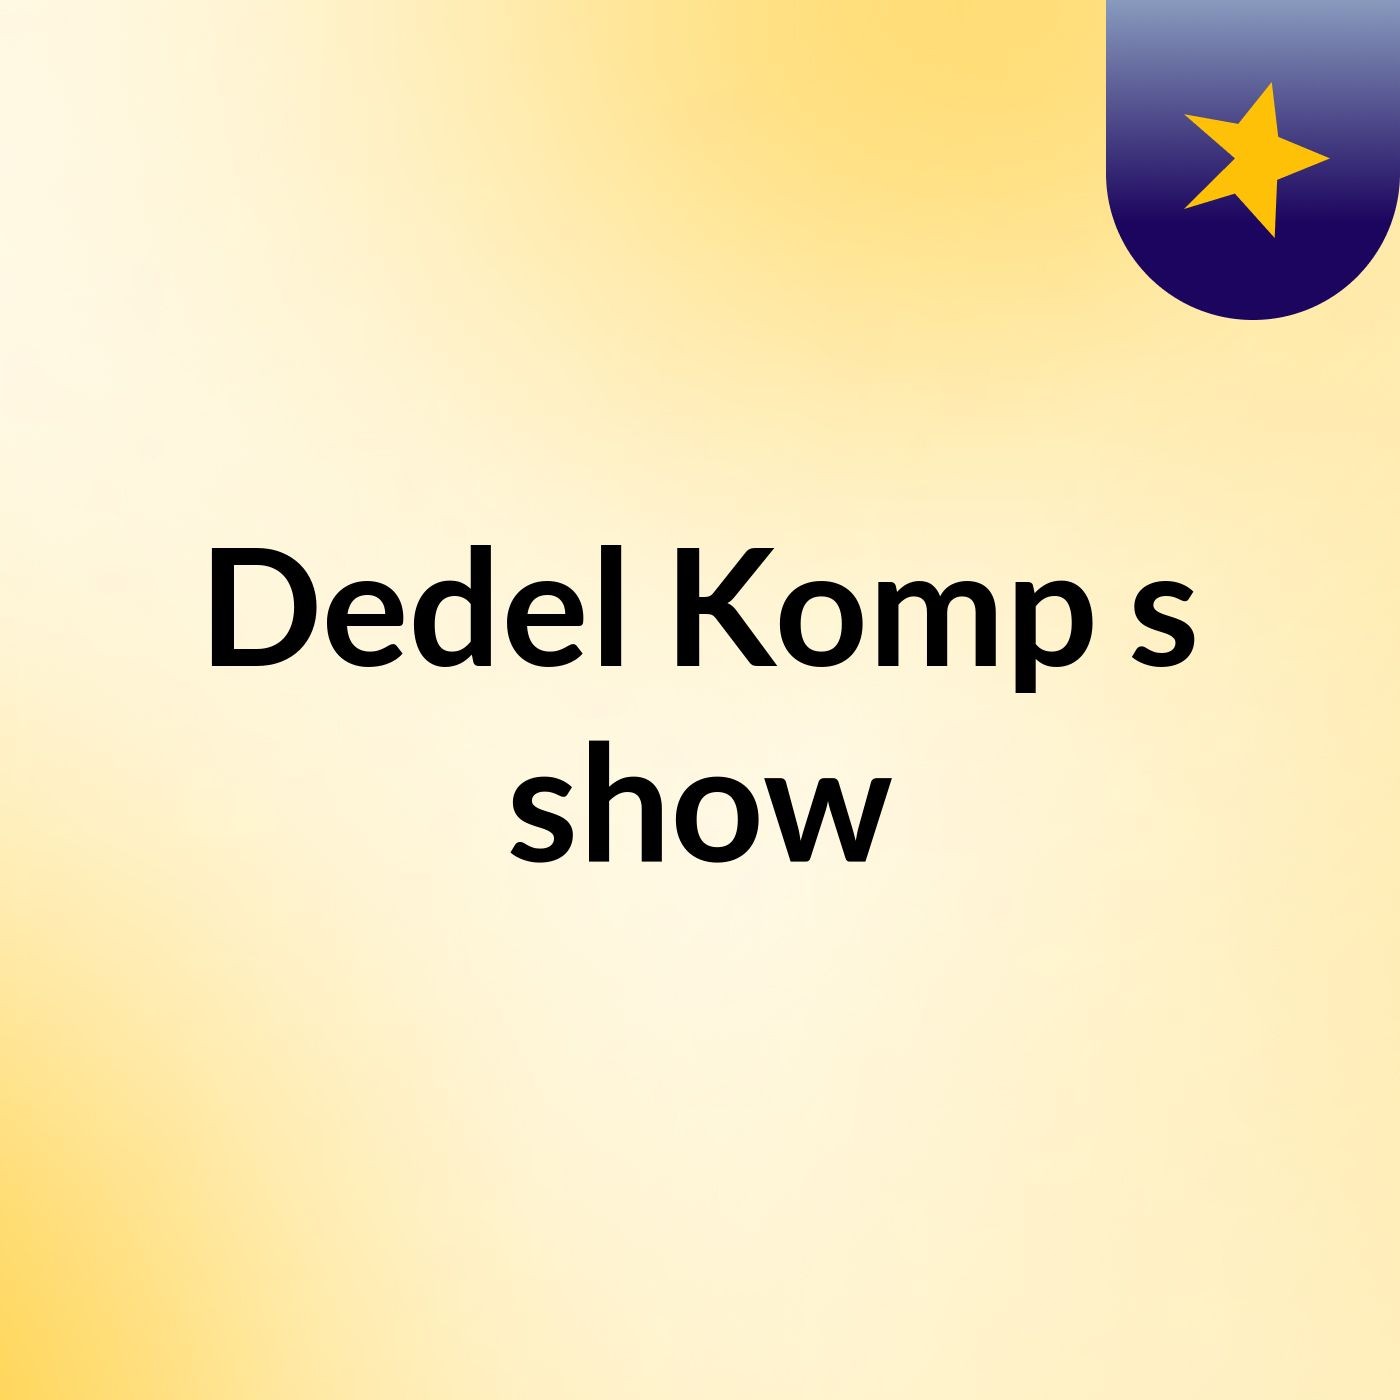 Dedel Komp's show